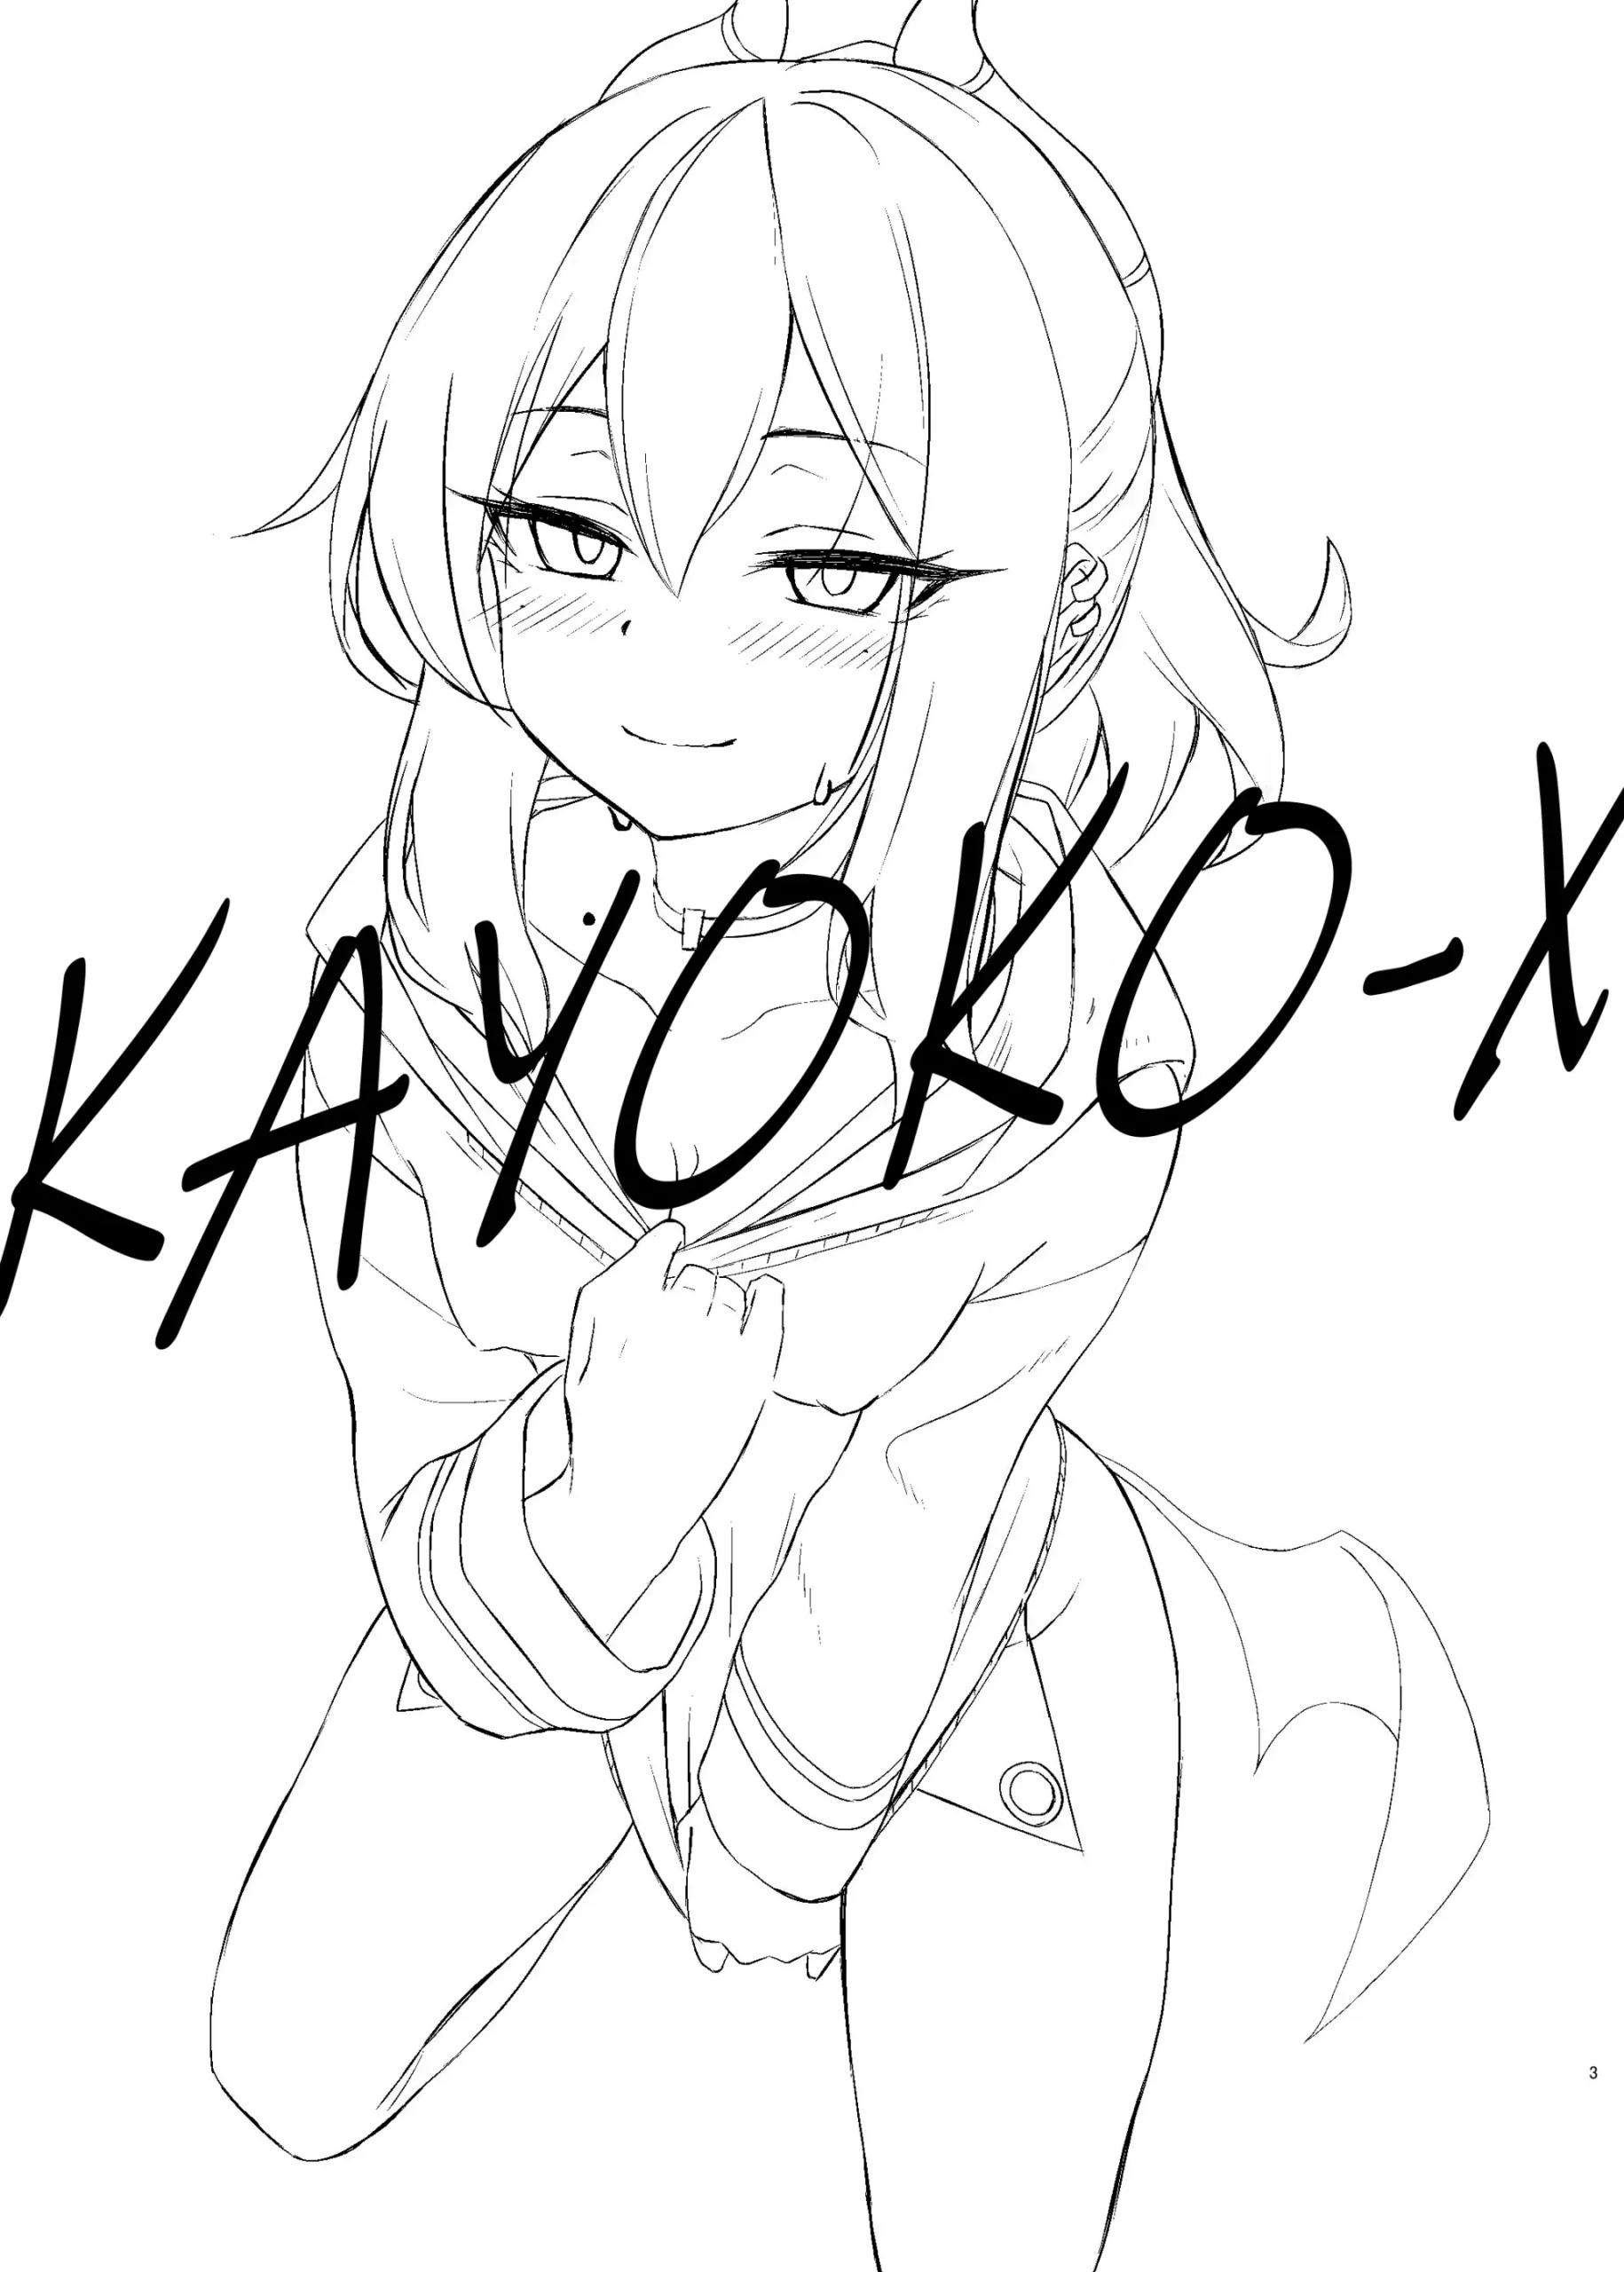 Kayoko-x - Sex with Kayoko